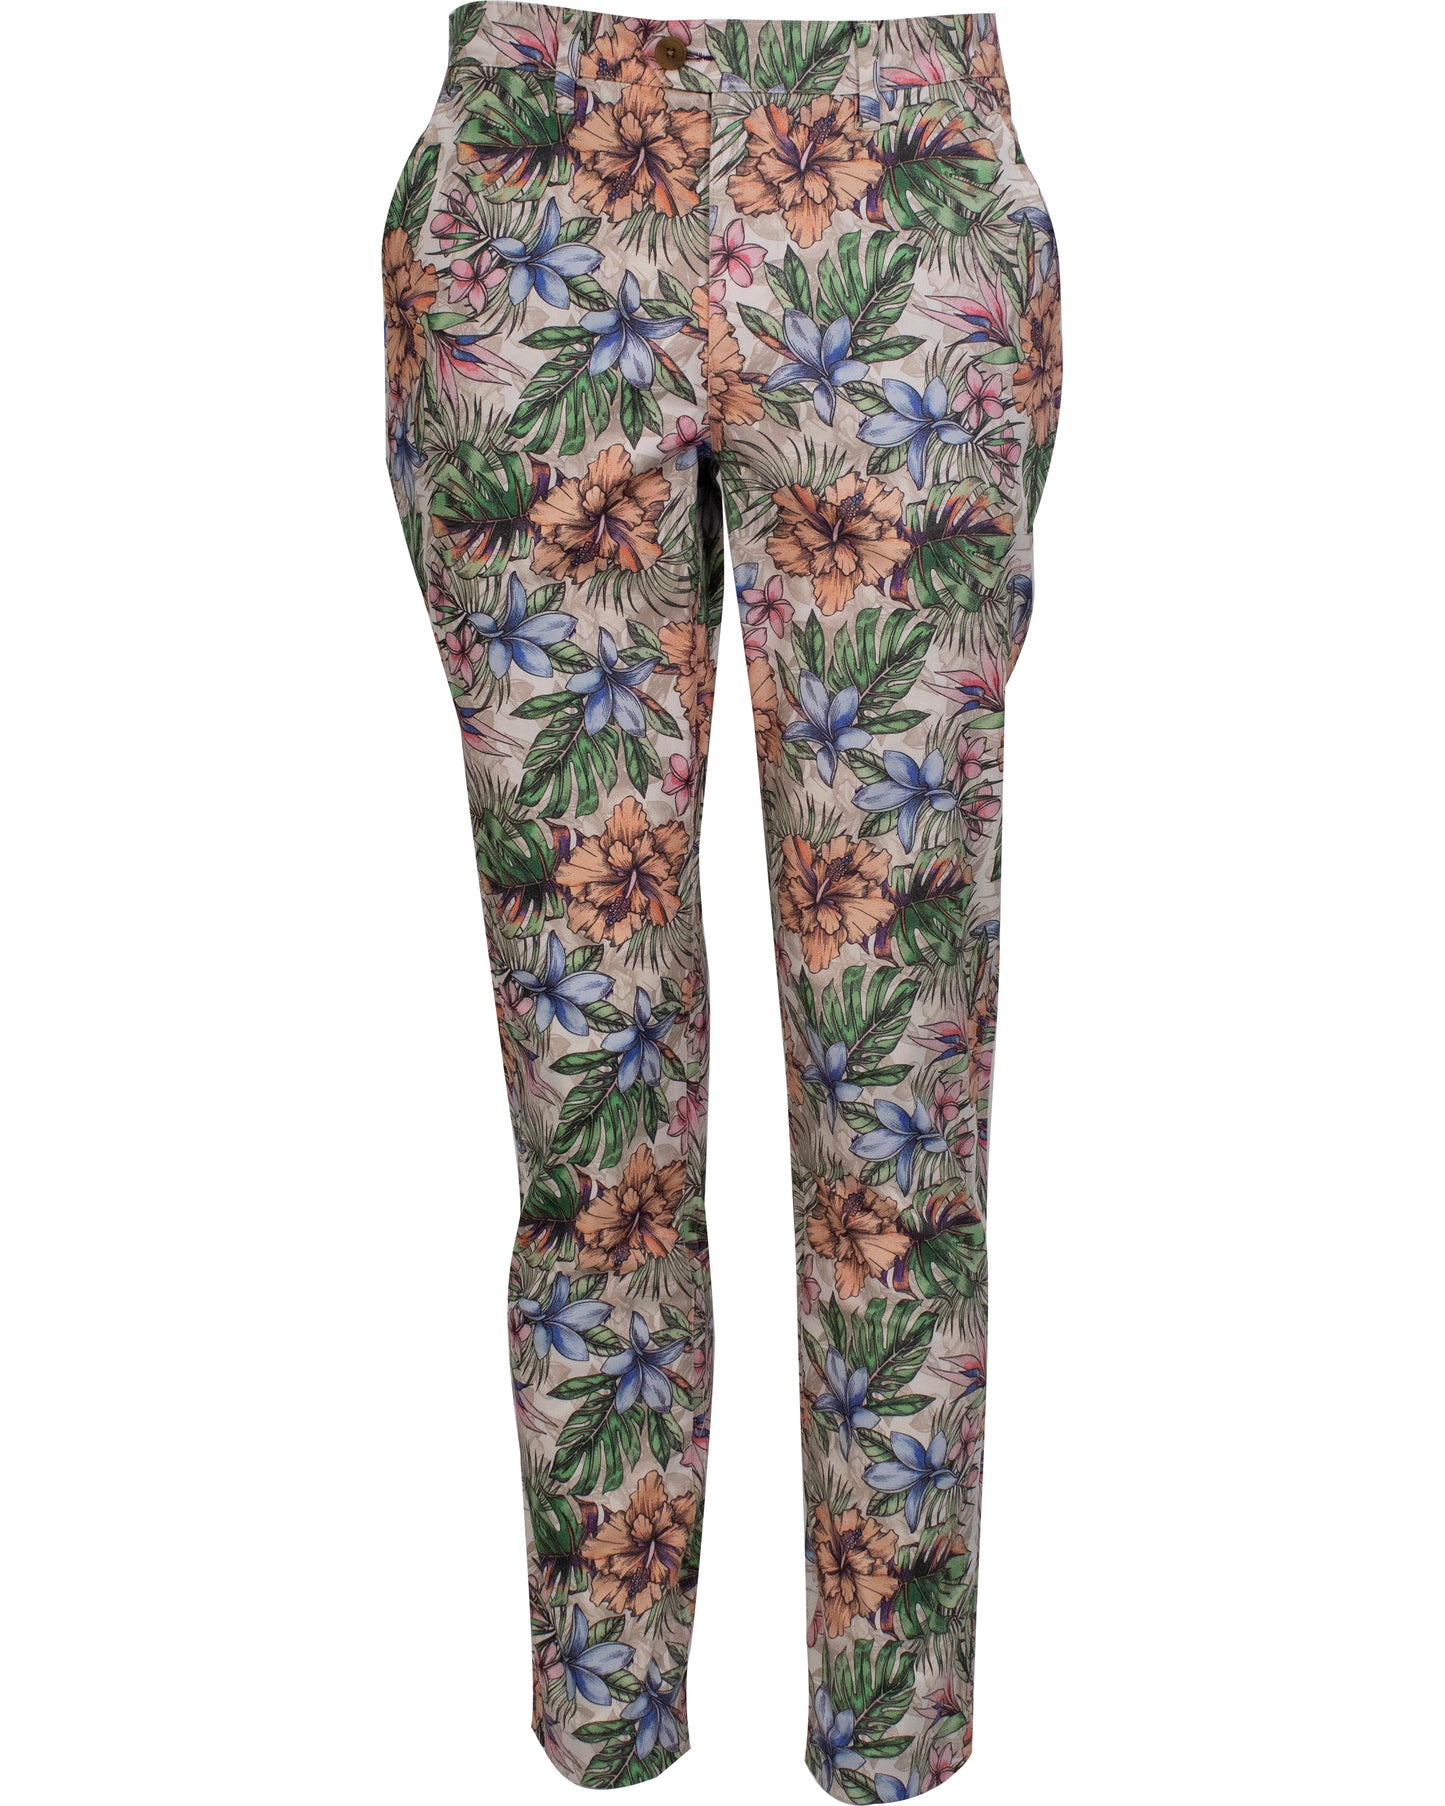 Multi colored floral printed menswear trouser/slack